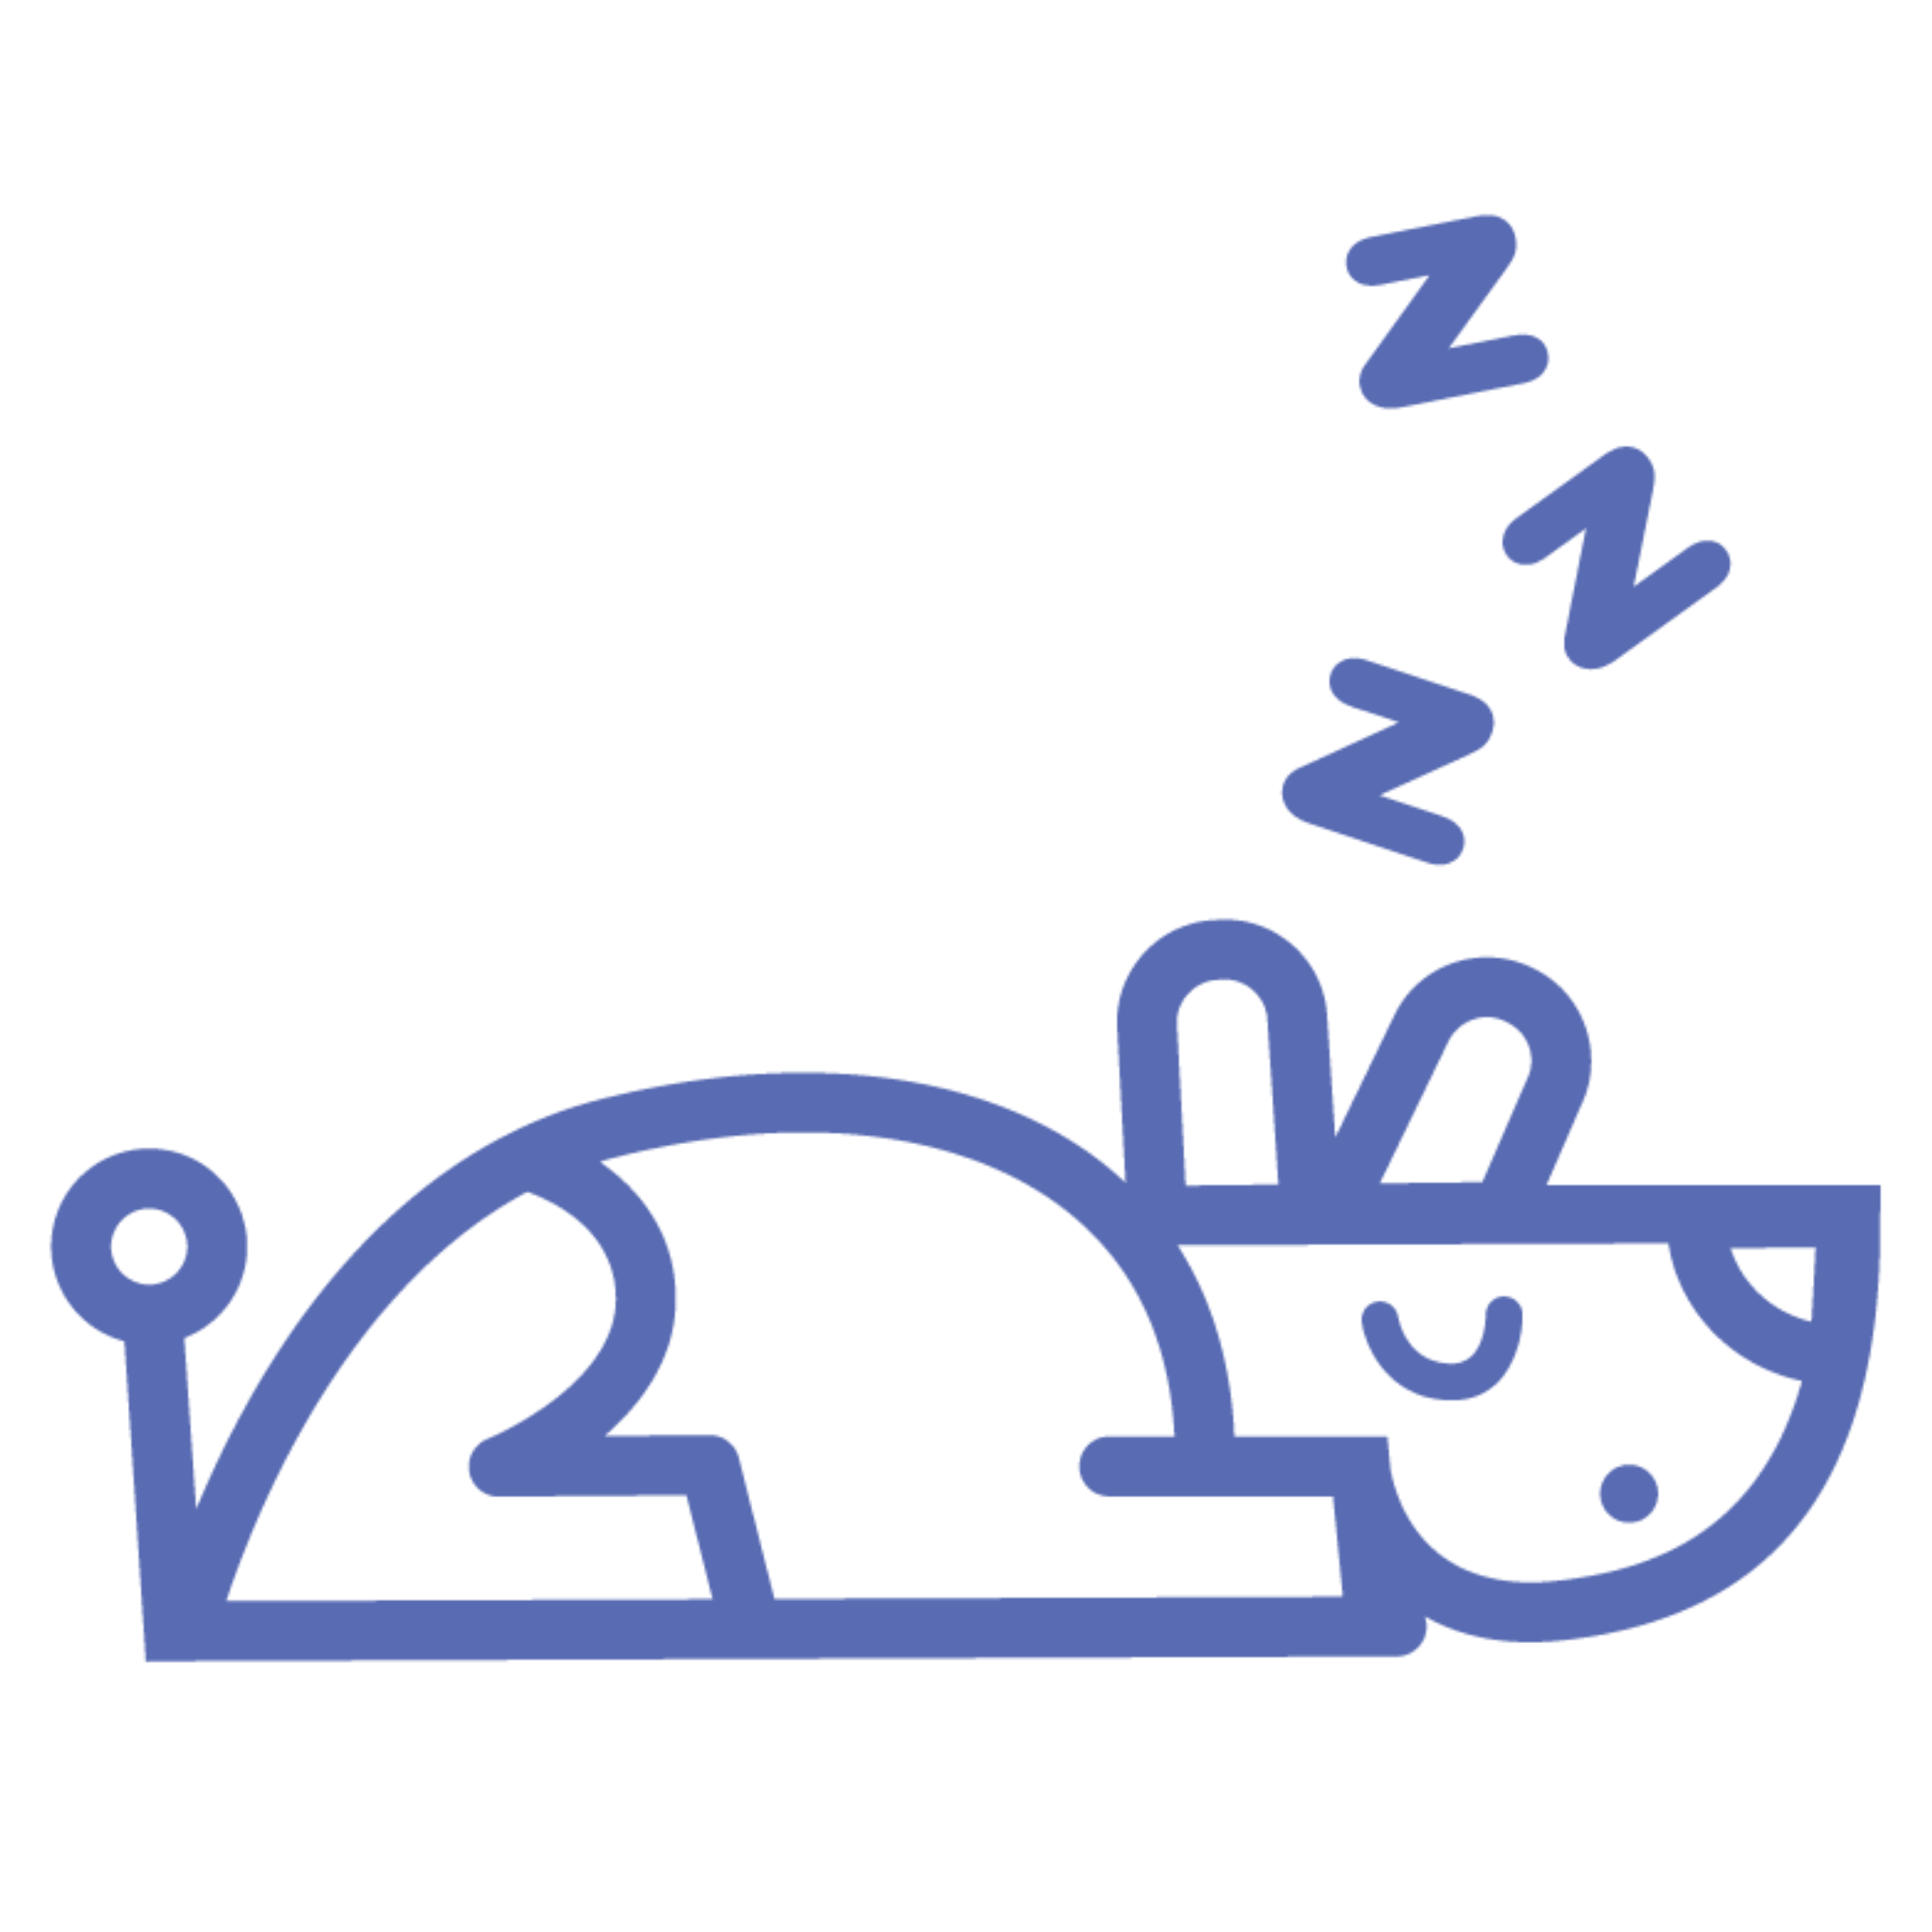 blue dog icon sleeping